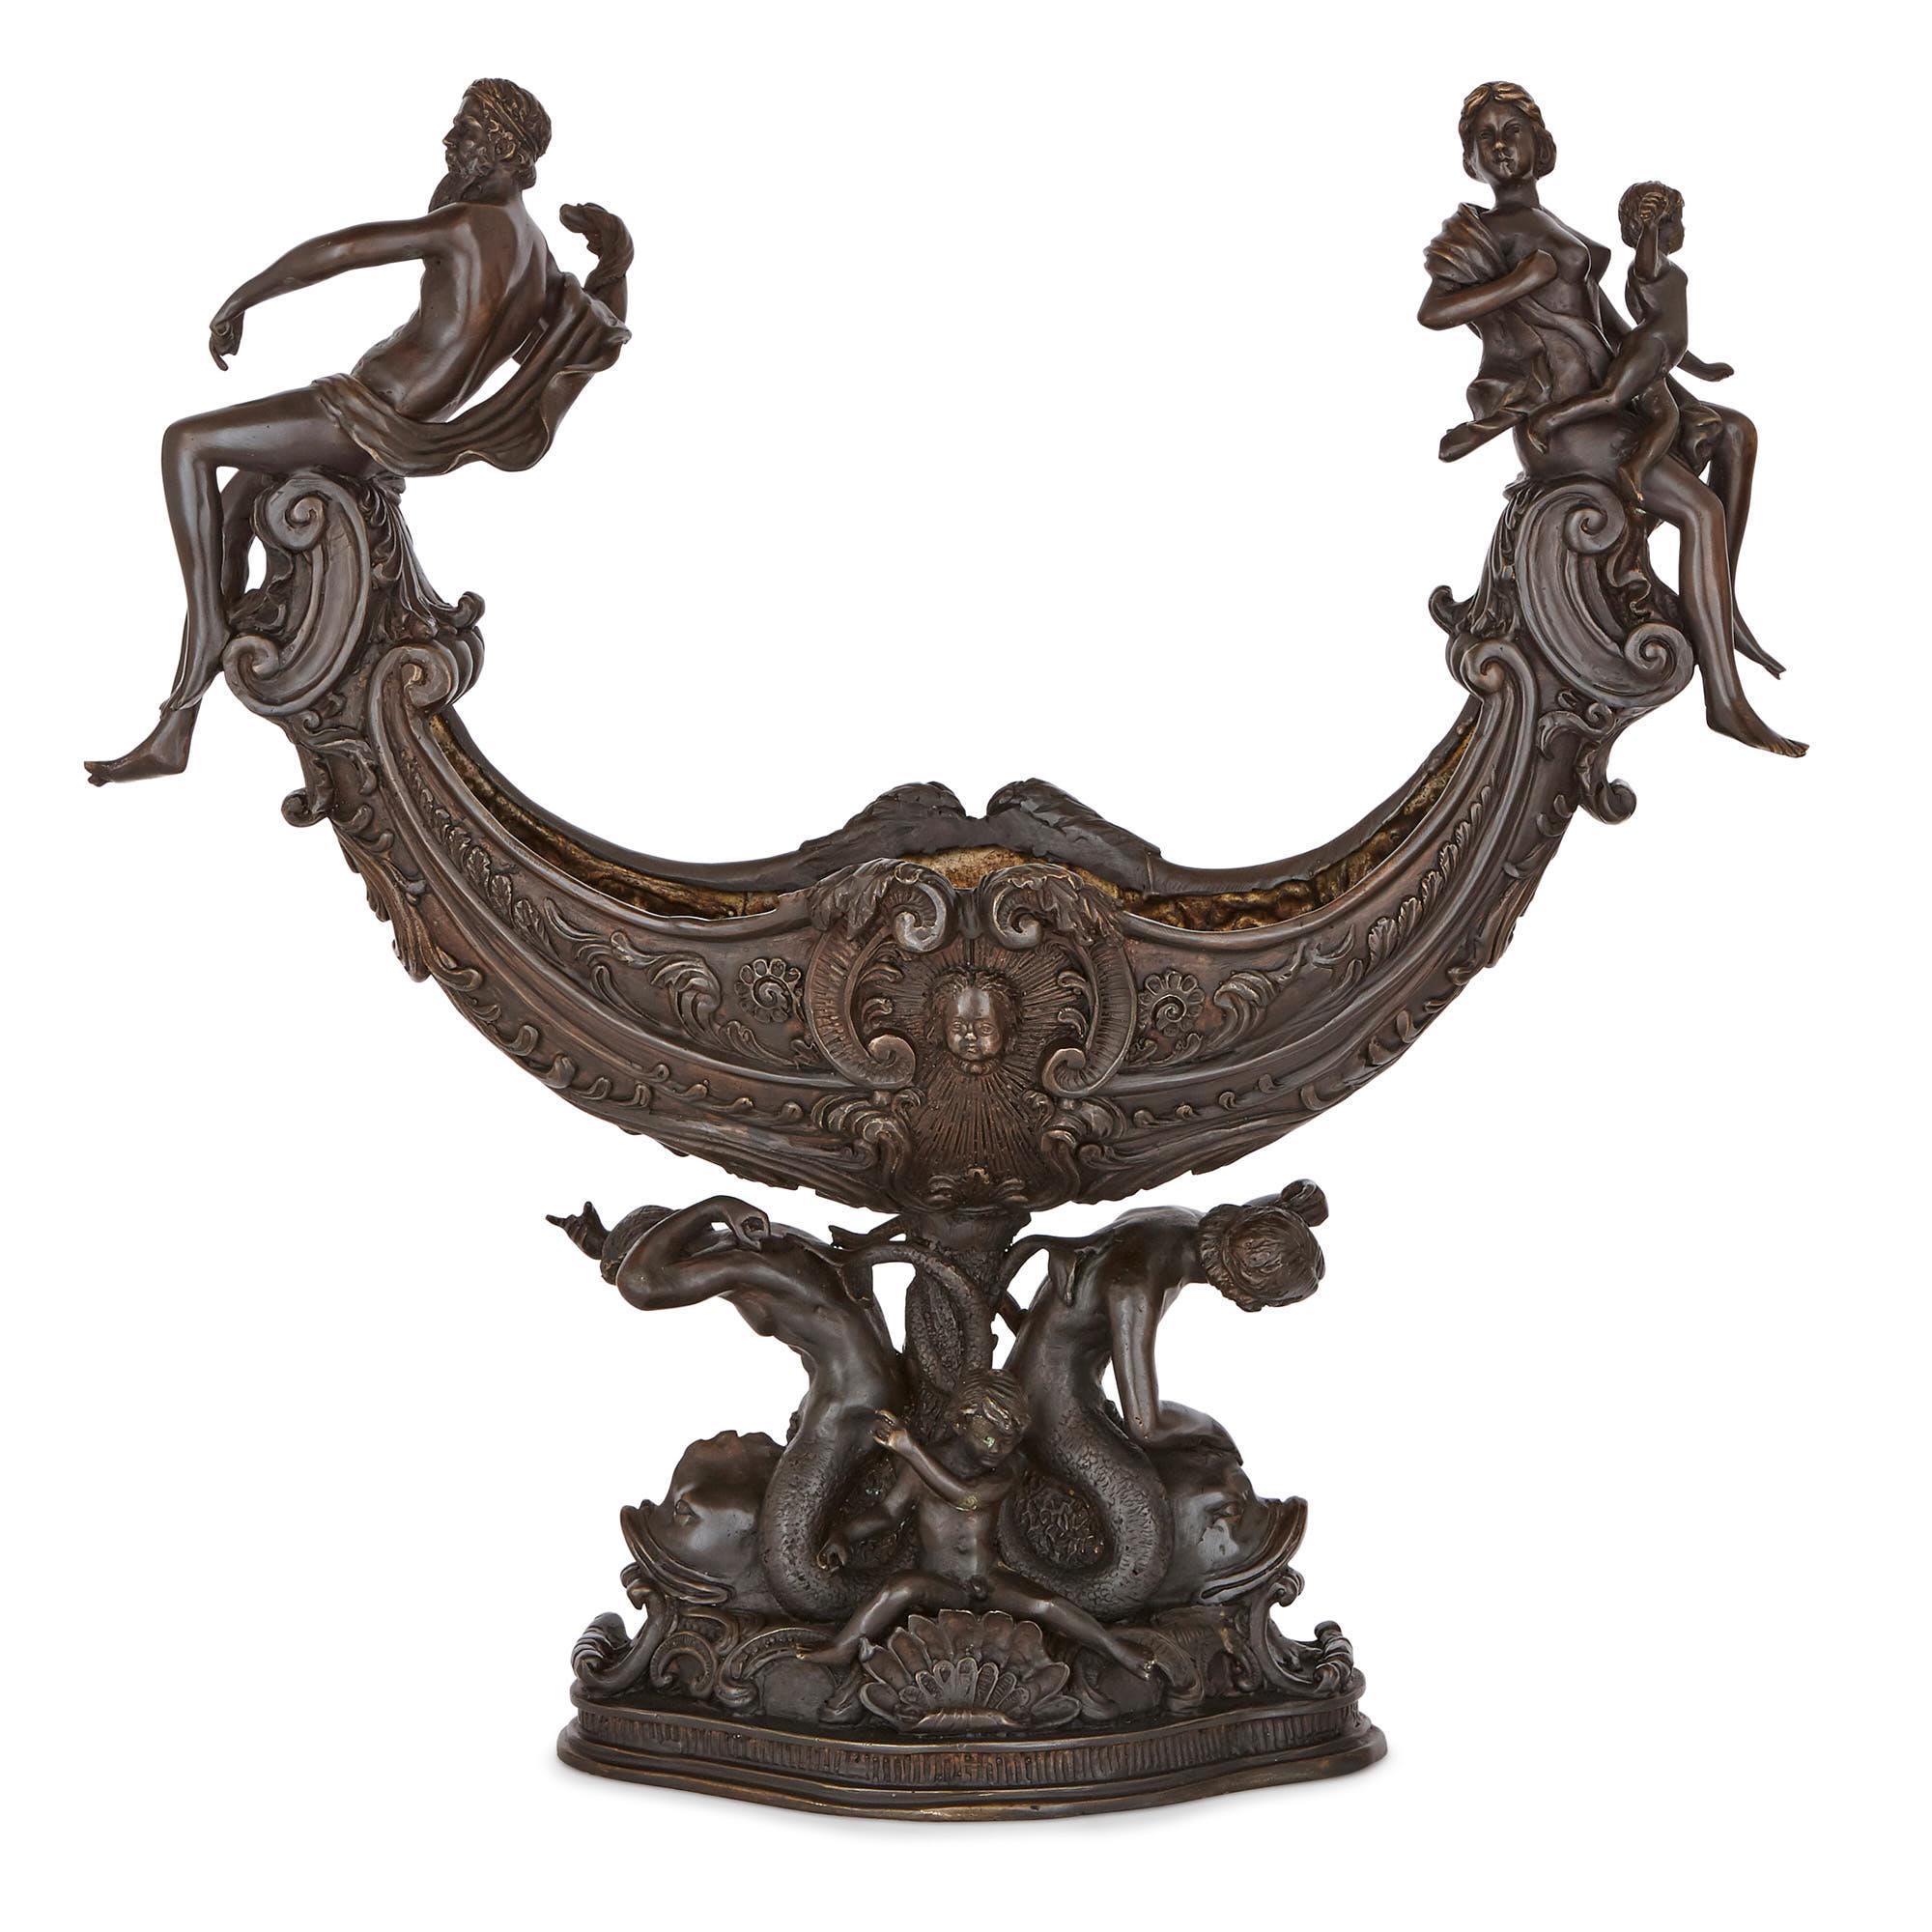 Diese Tafelgarnitur wurde im 19. Jahrhundert in Italien hergestellt. Die beiden bronzierten Metallelemente sind identisch gestaltet, in einem ausdrucksstarken und klassisch inspirierten Stil der Spätrenaissance. 

Die Gegenstände haben die Form von